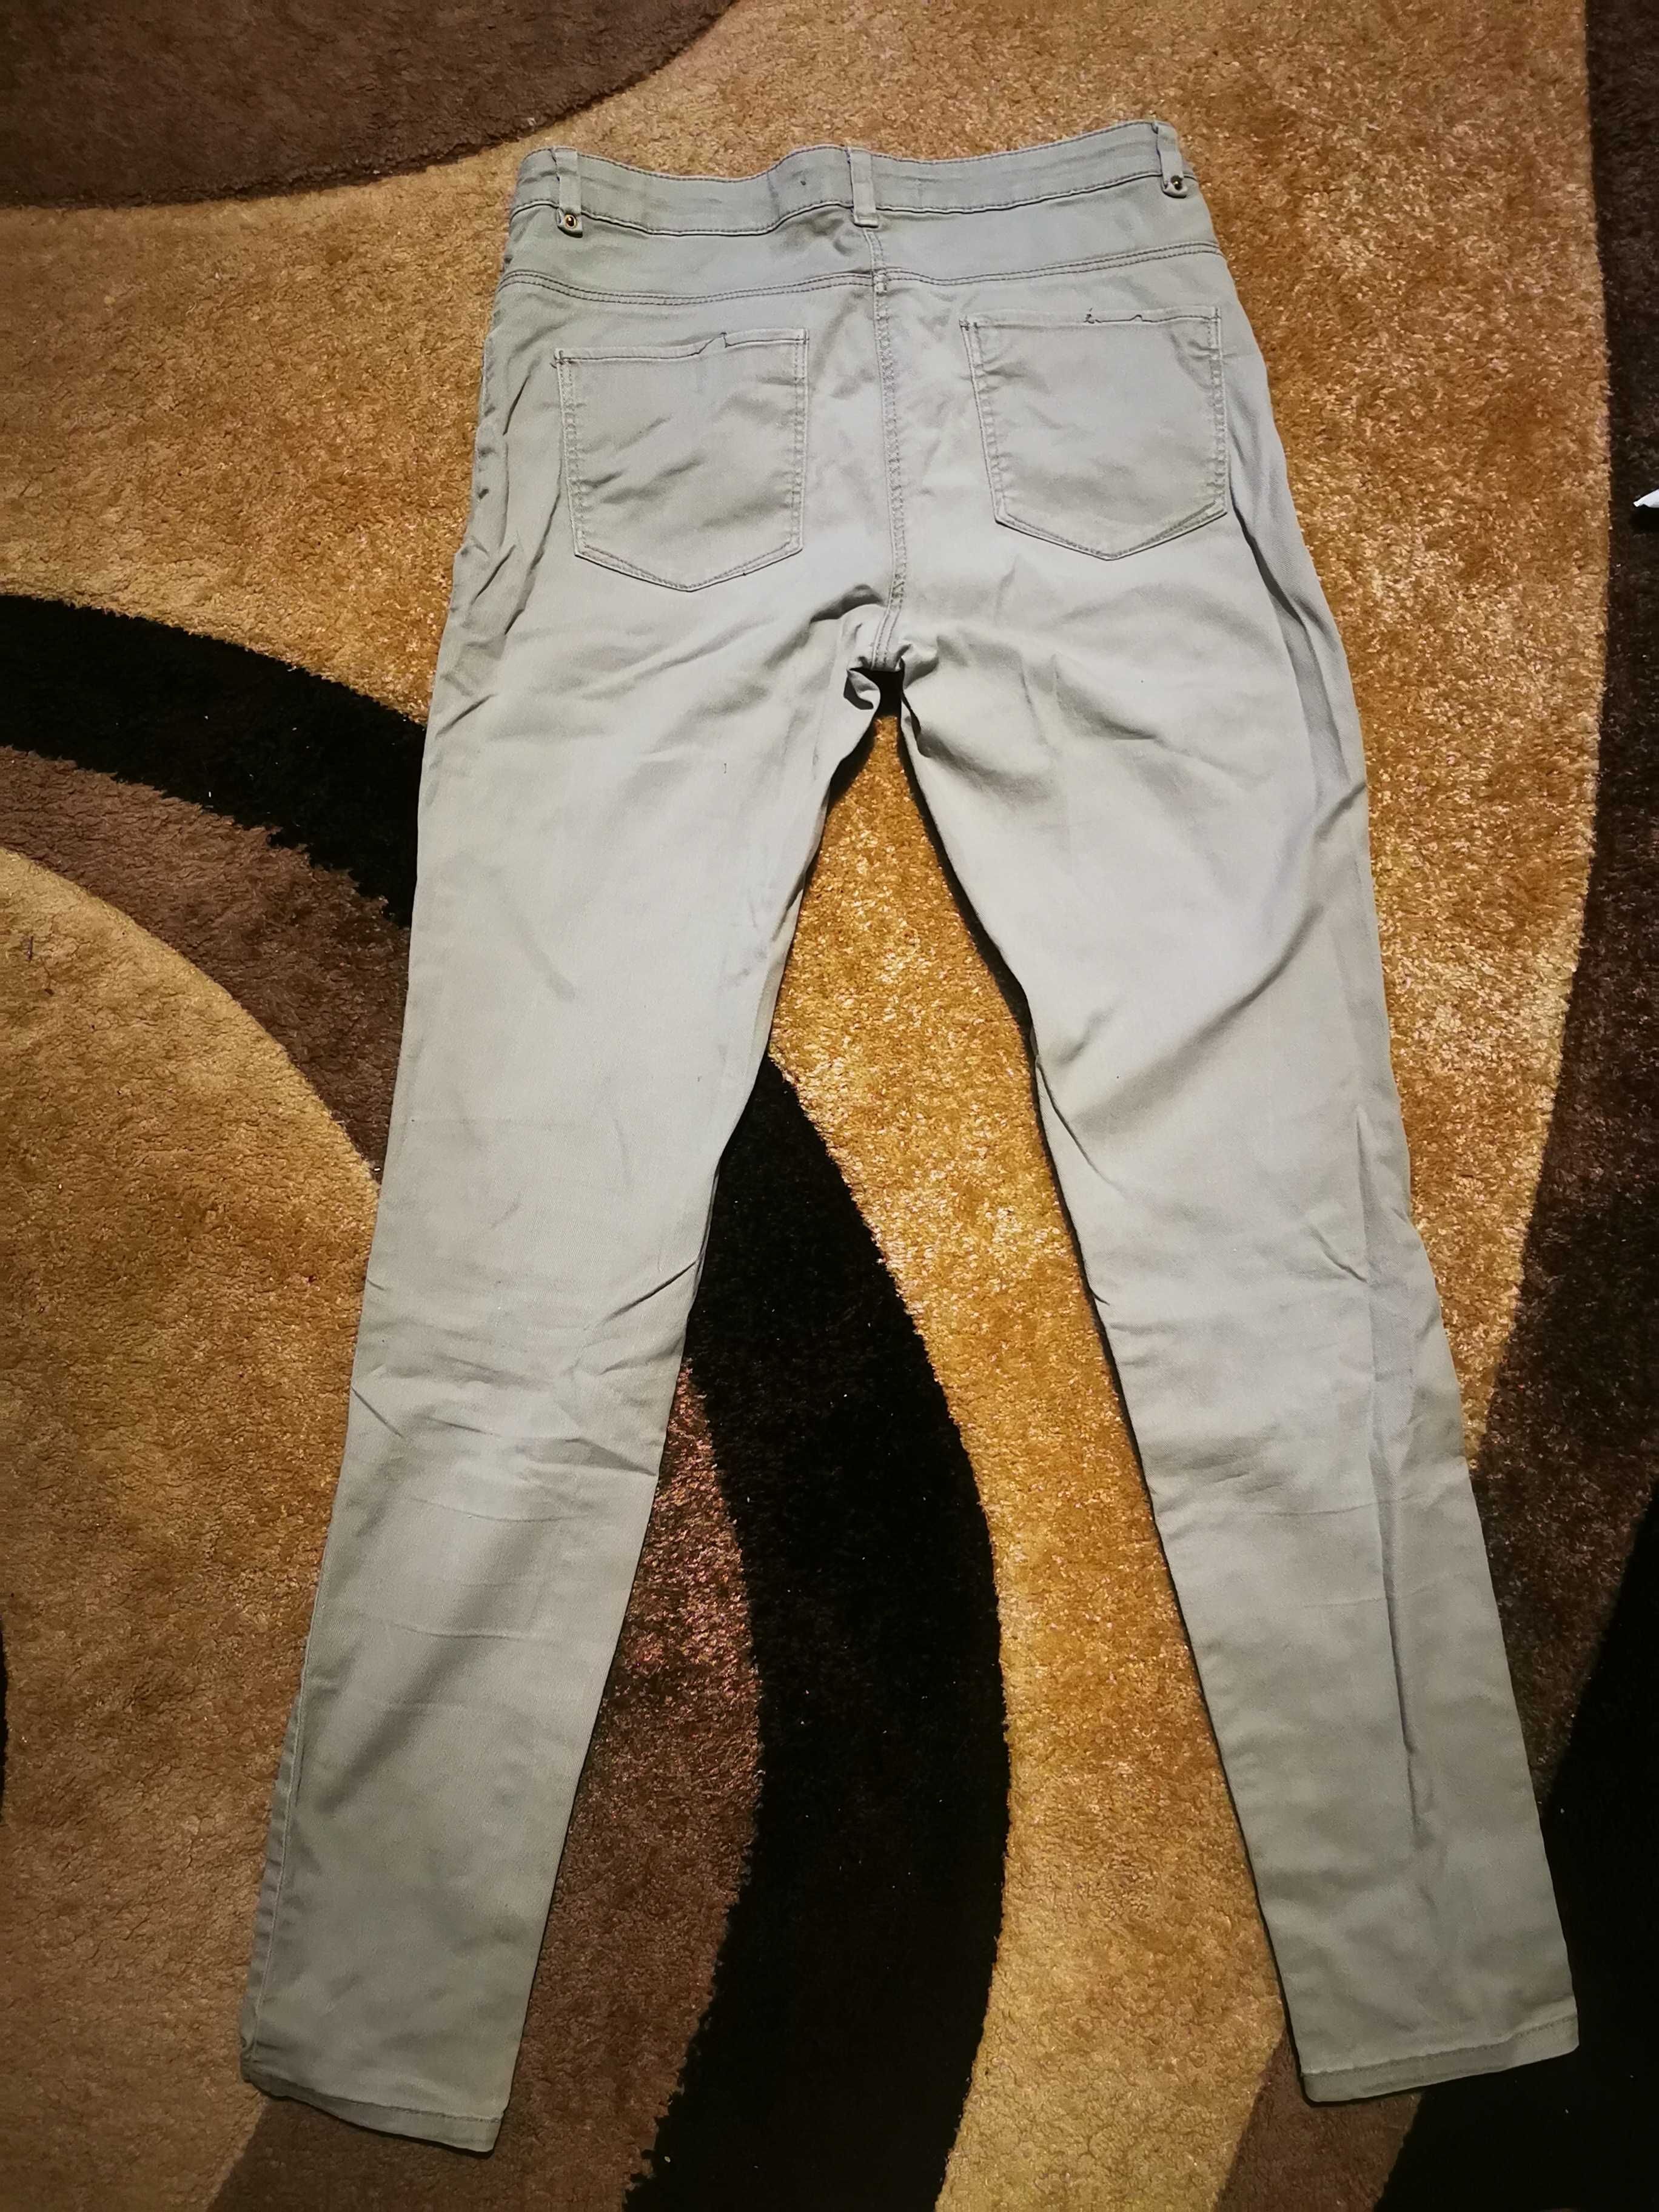 Dżinsy/jeansy jasno brązowe 40